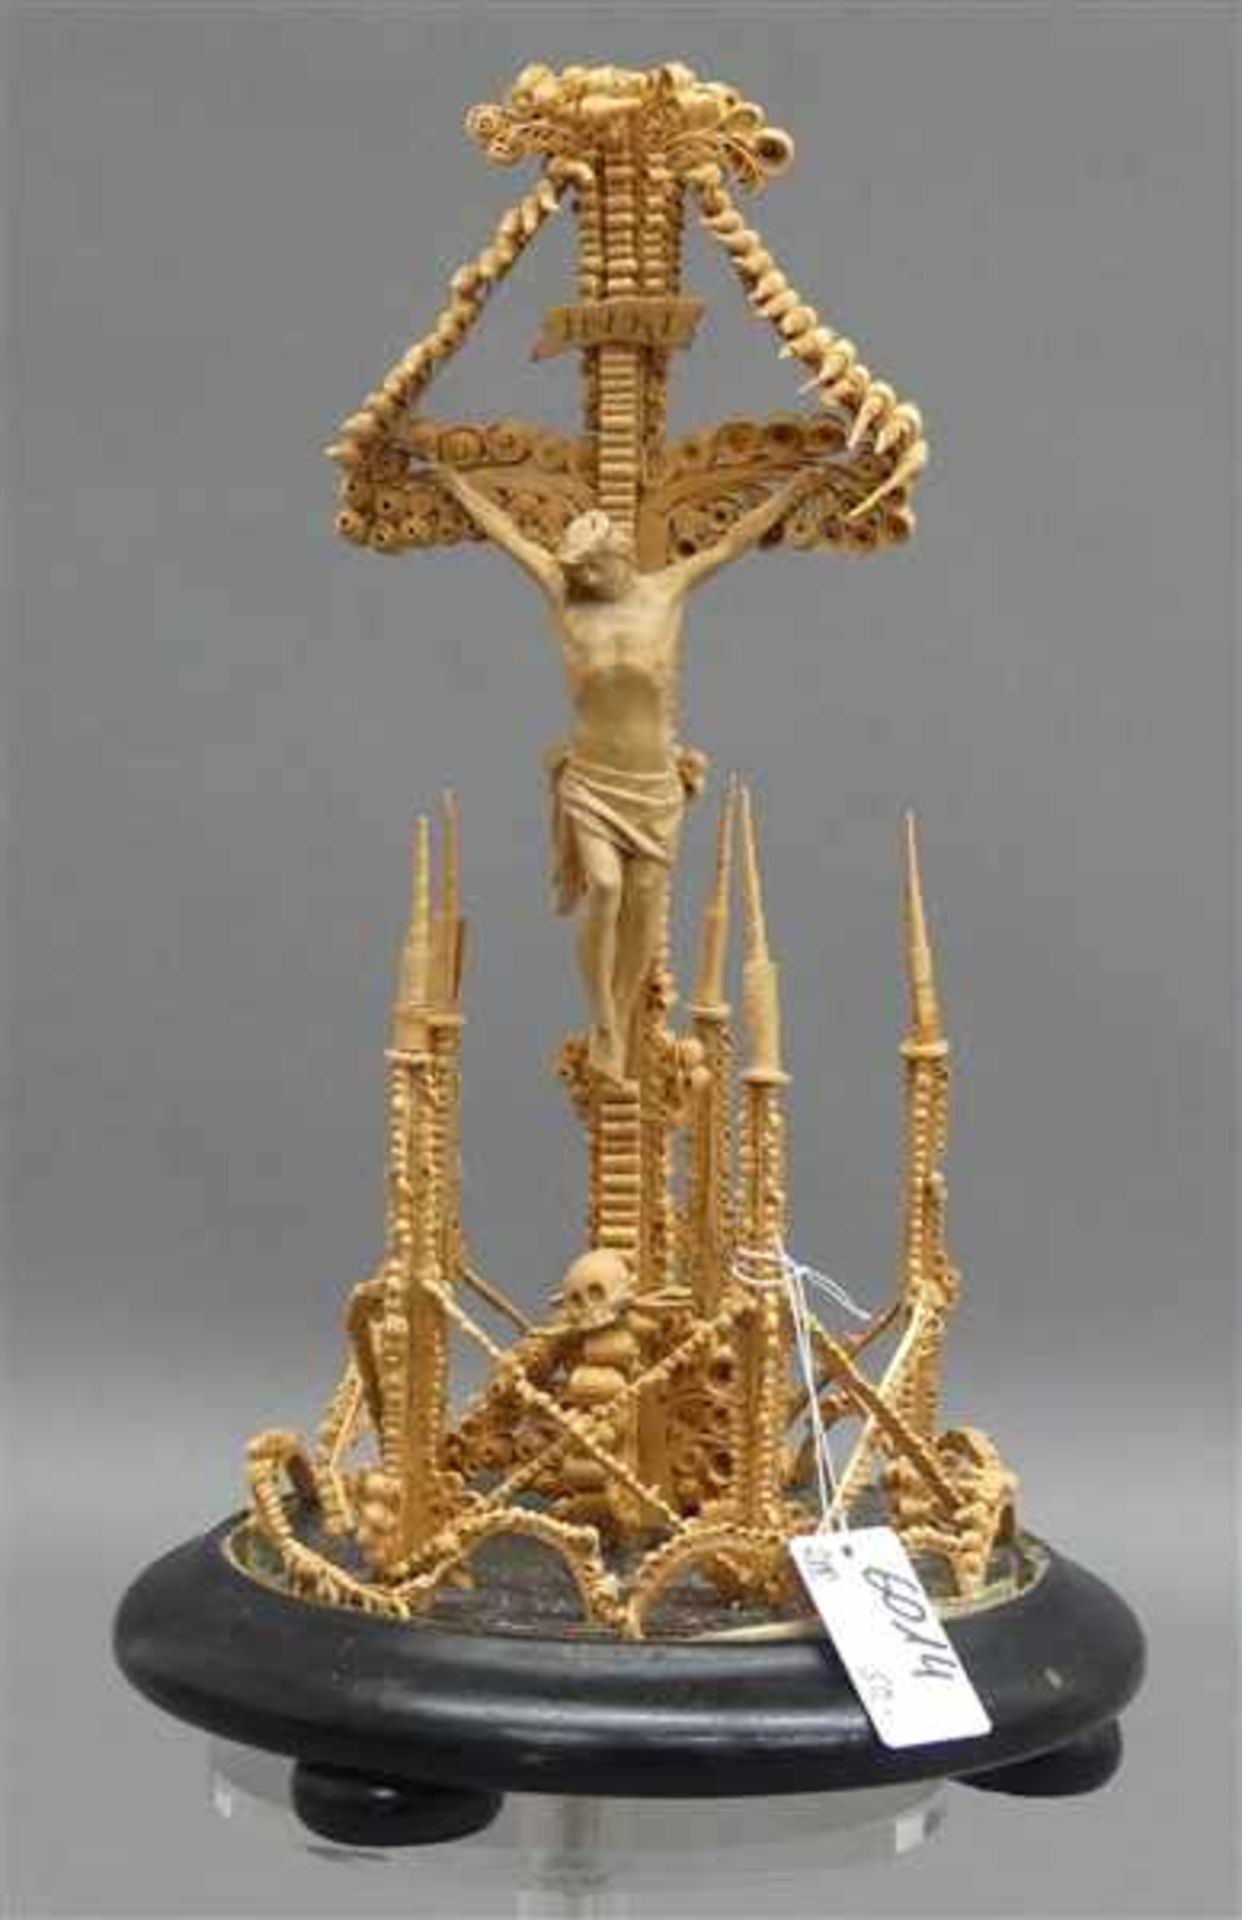 EingerichtSpanarbeit, Kreuzigungsszene, Christus aus Holz, bäuerliche Arbeit um 1900, Glassturz